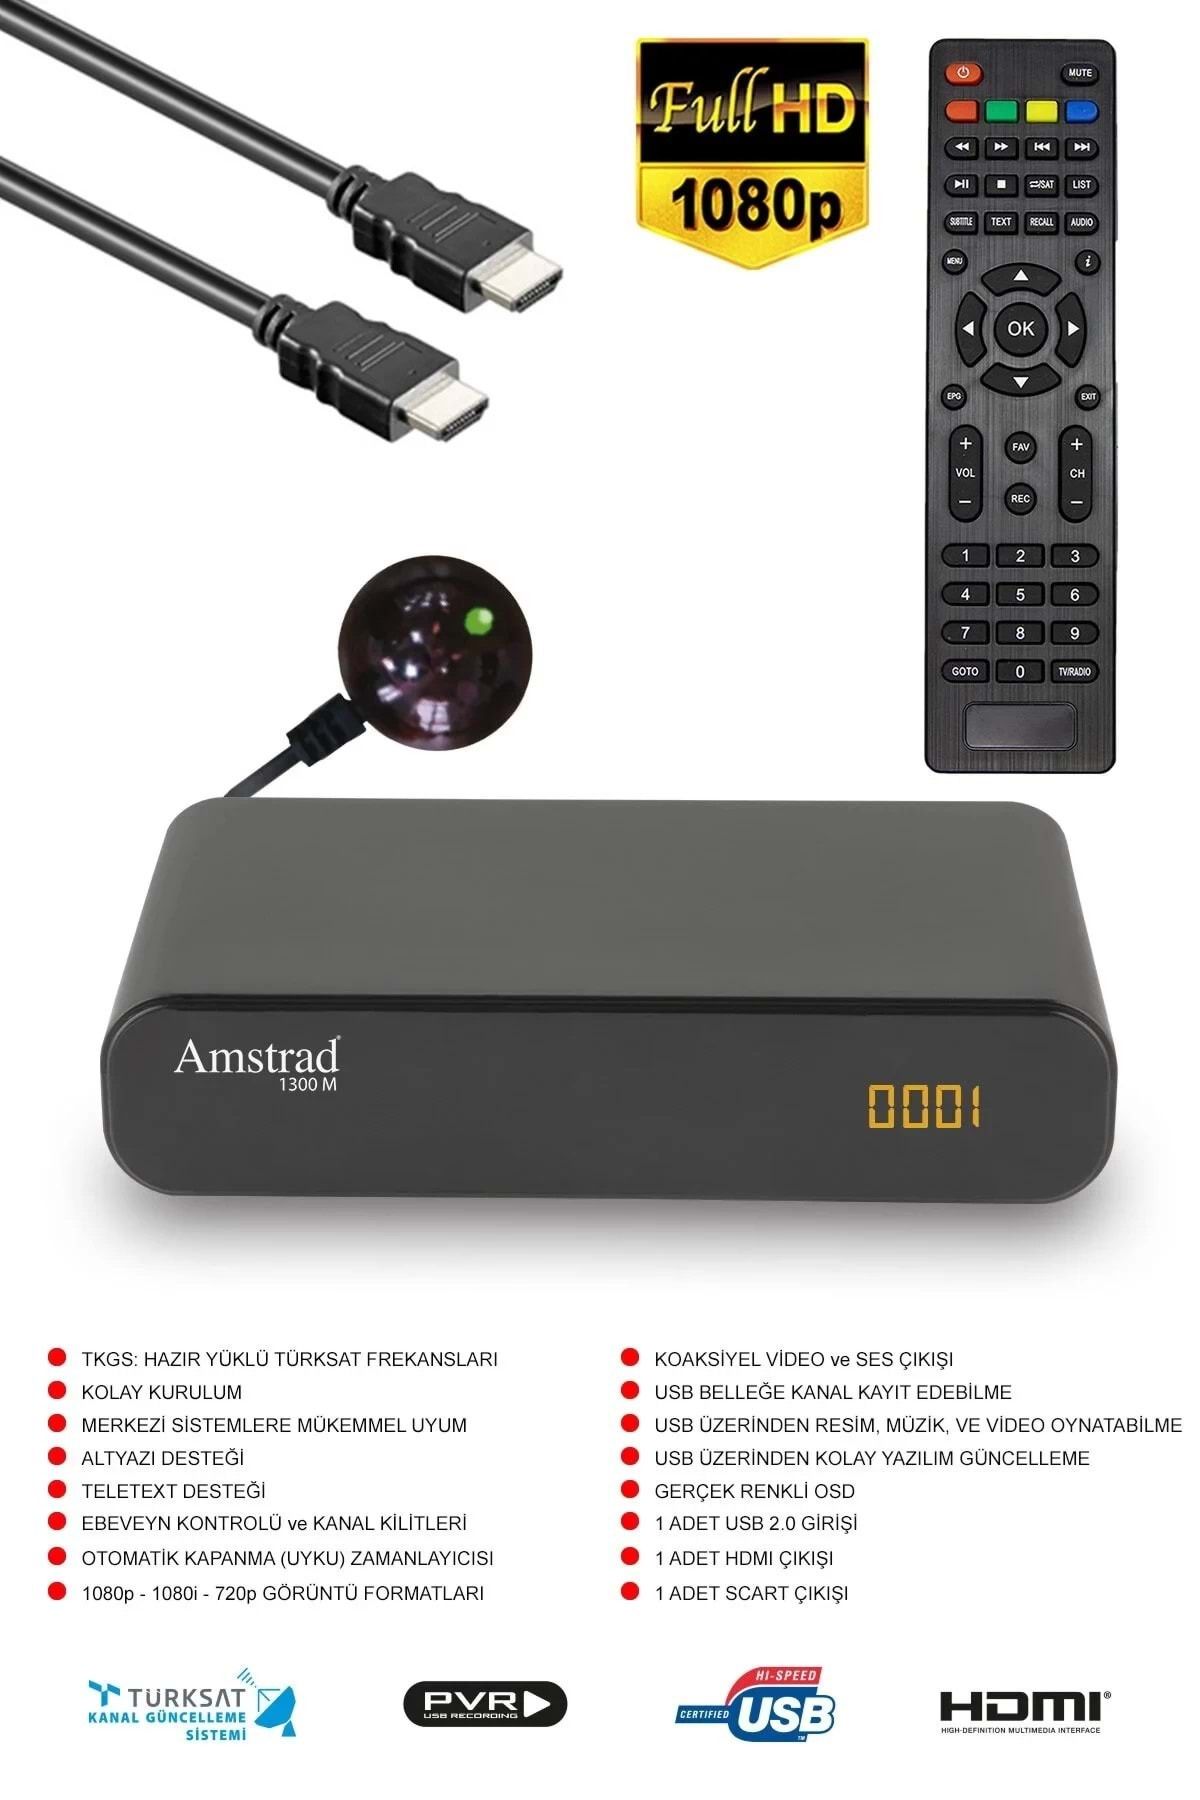 Amstrad 1300 M - Hem Mini Hem Set Üstü Hd Uydu Alıcısı - ( Kanallar Yüklü - Tkgs - Usb - Hdmi - Scart )